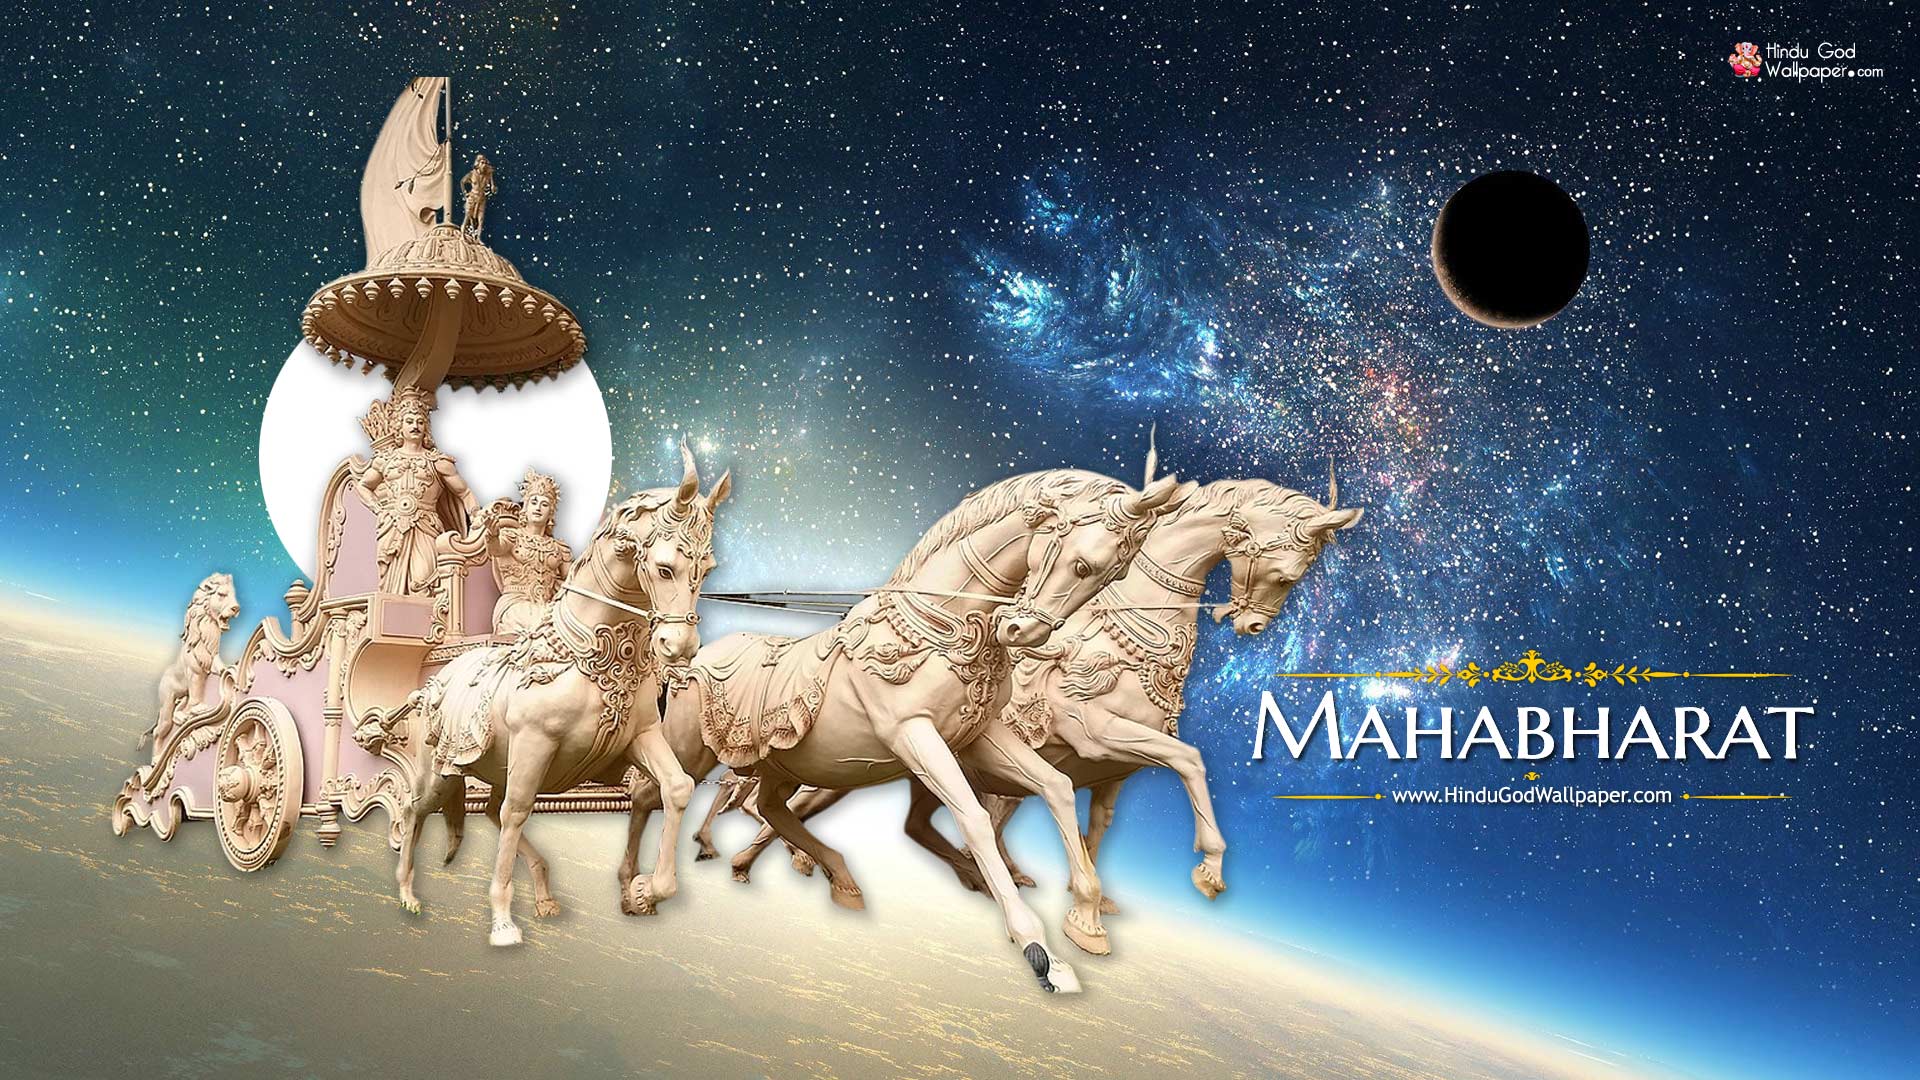 AI Image of the Mahabharat War! : r/Sham_Sharma_Show